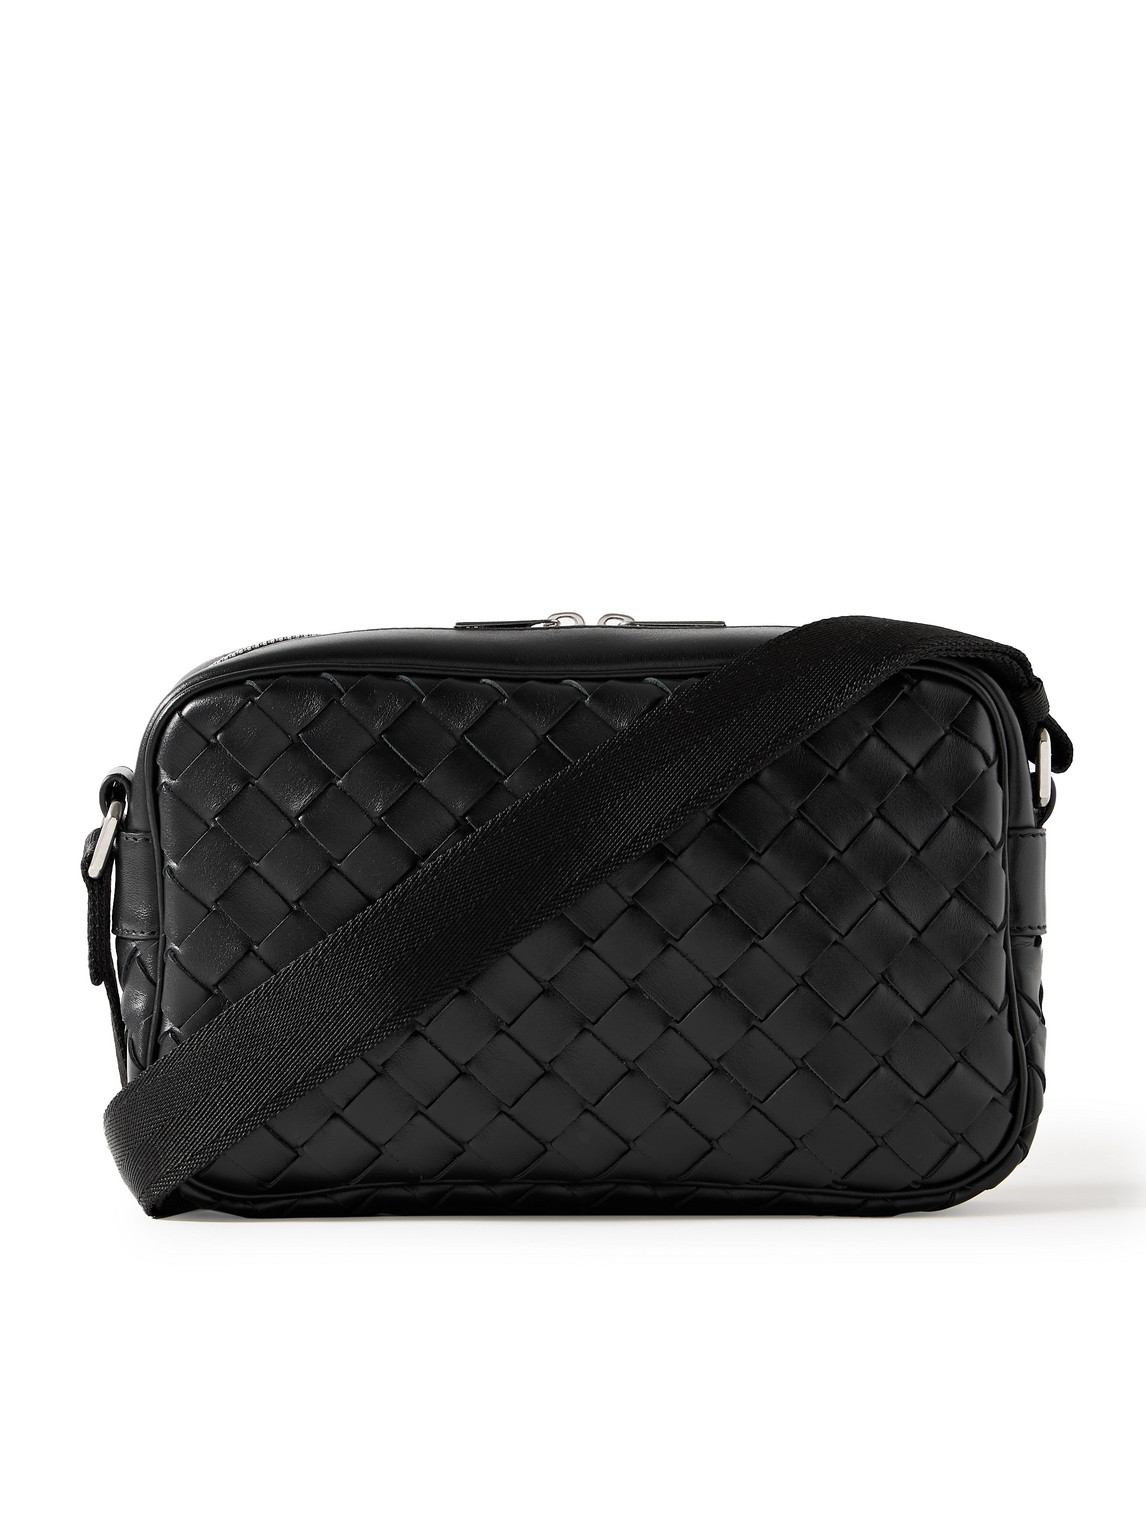 Bottega Veneta Black Leather Messenger Bag